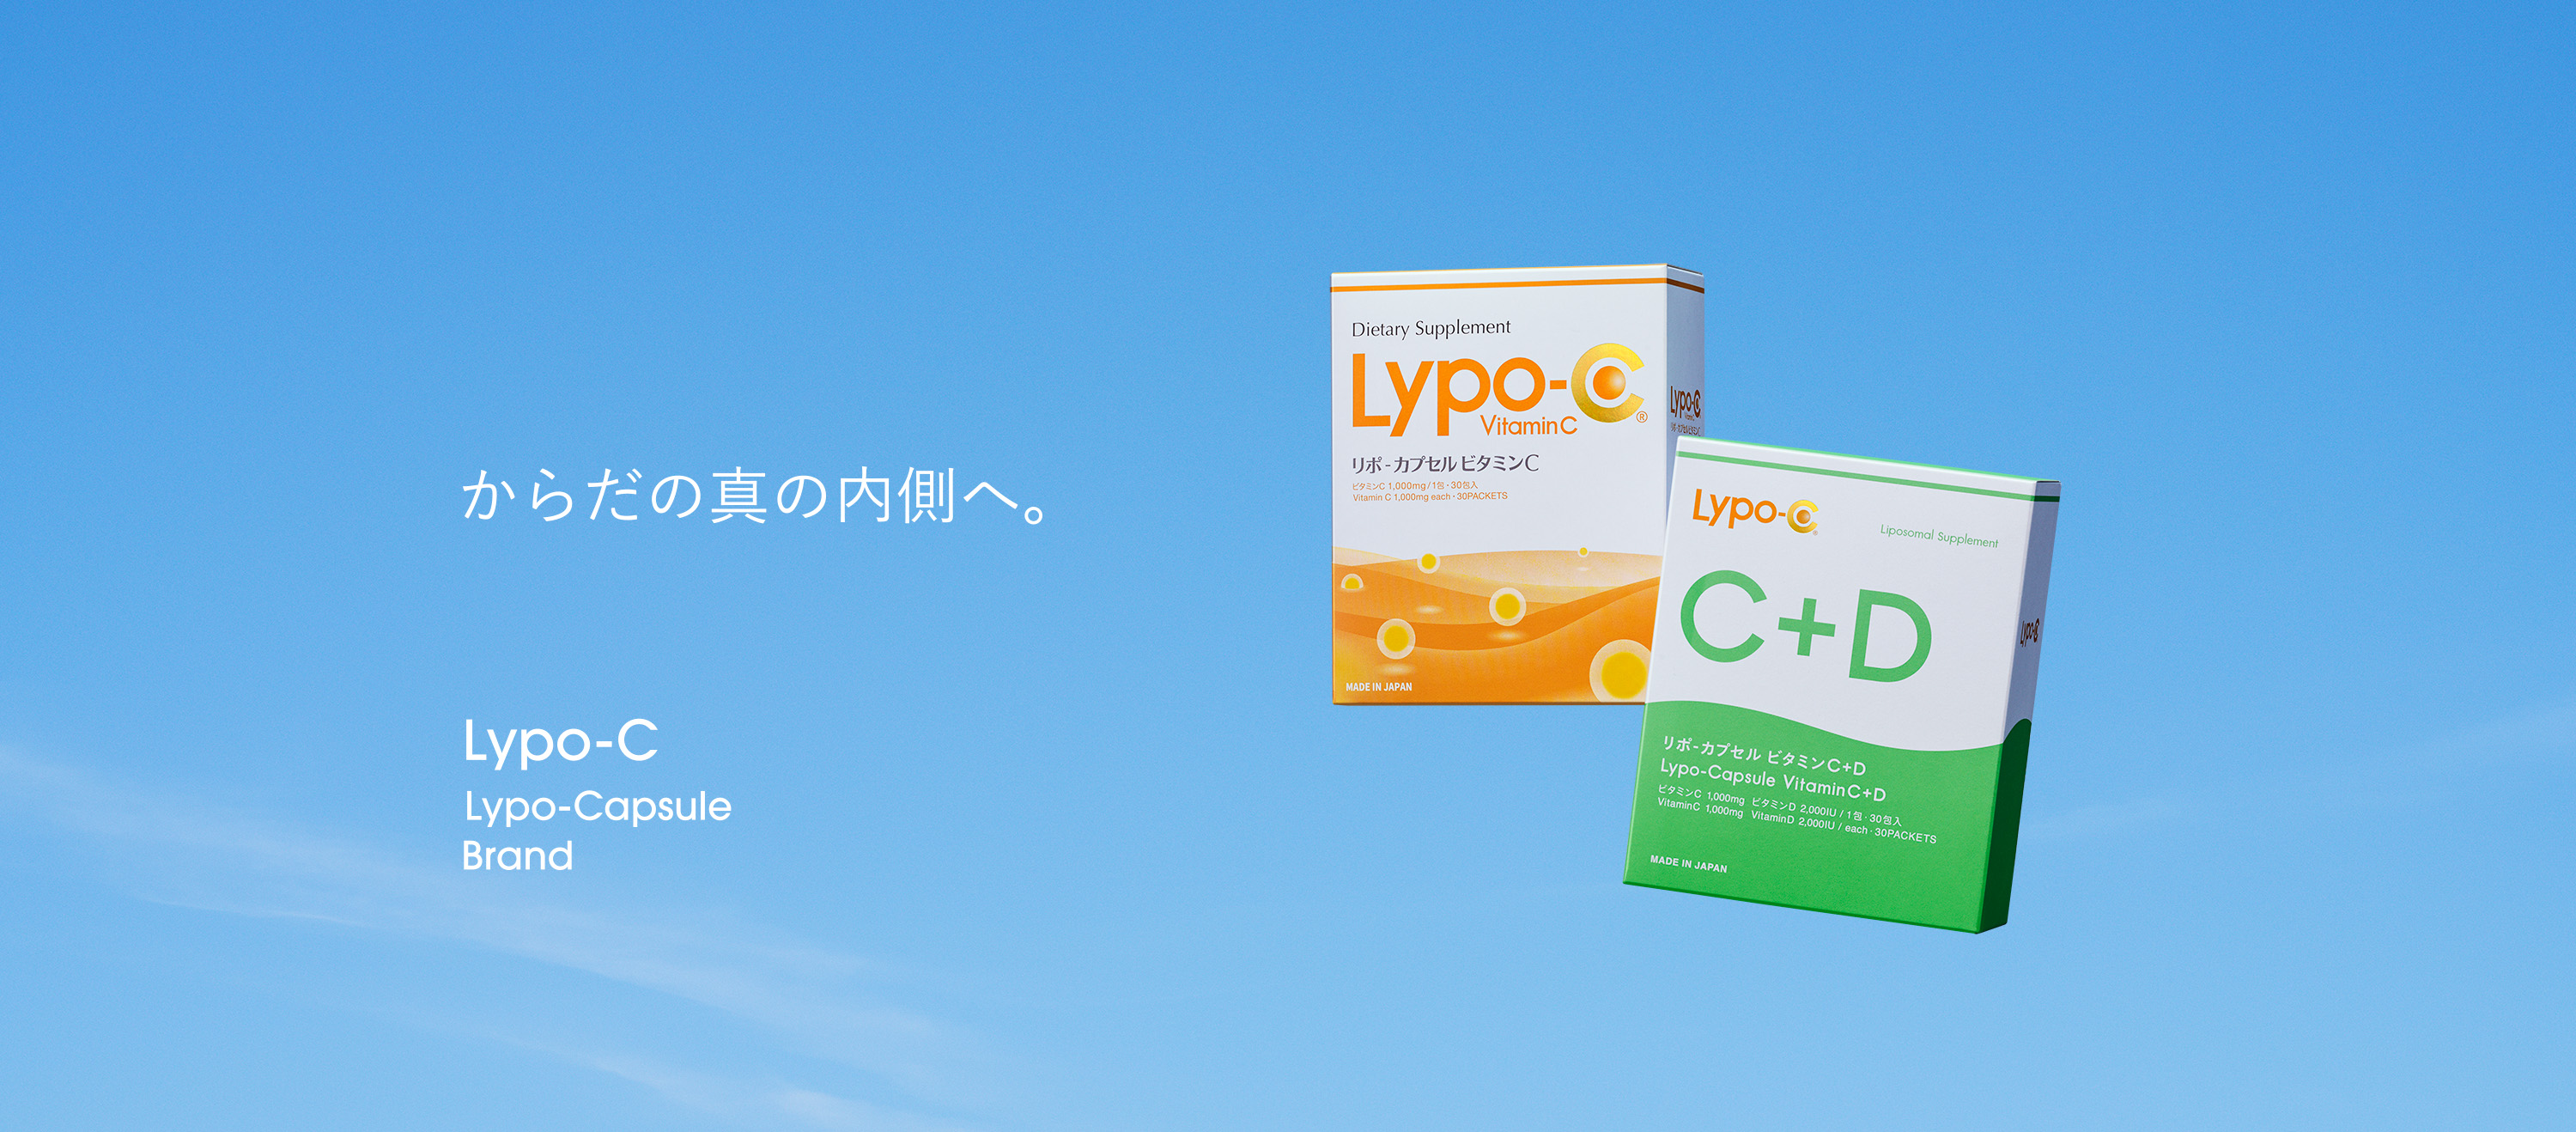 9月13日（水）より、銀座三越でLypo-Cの新商品「Lypo-C Vitamin ...